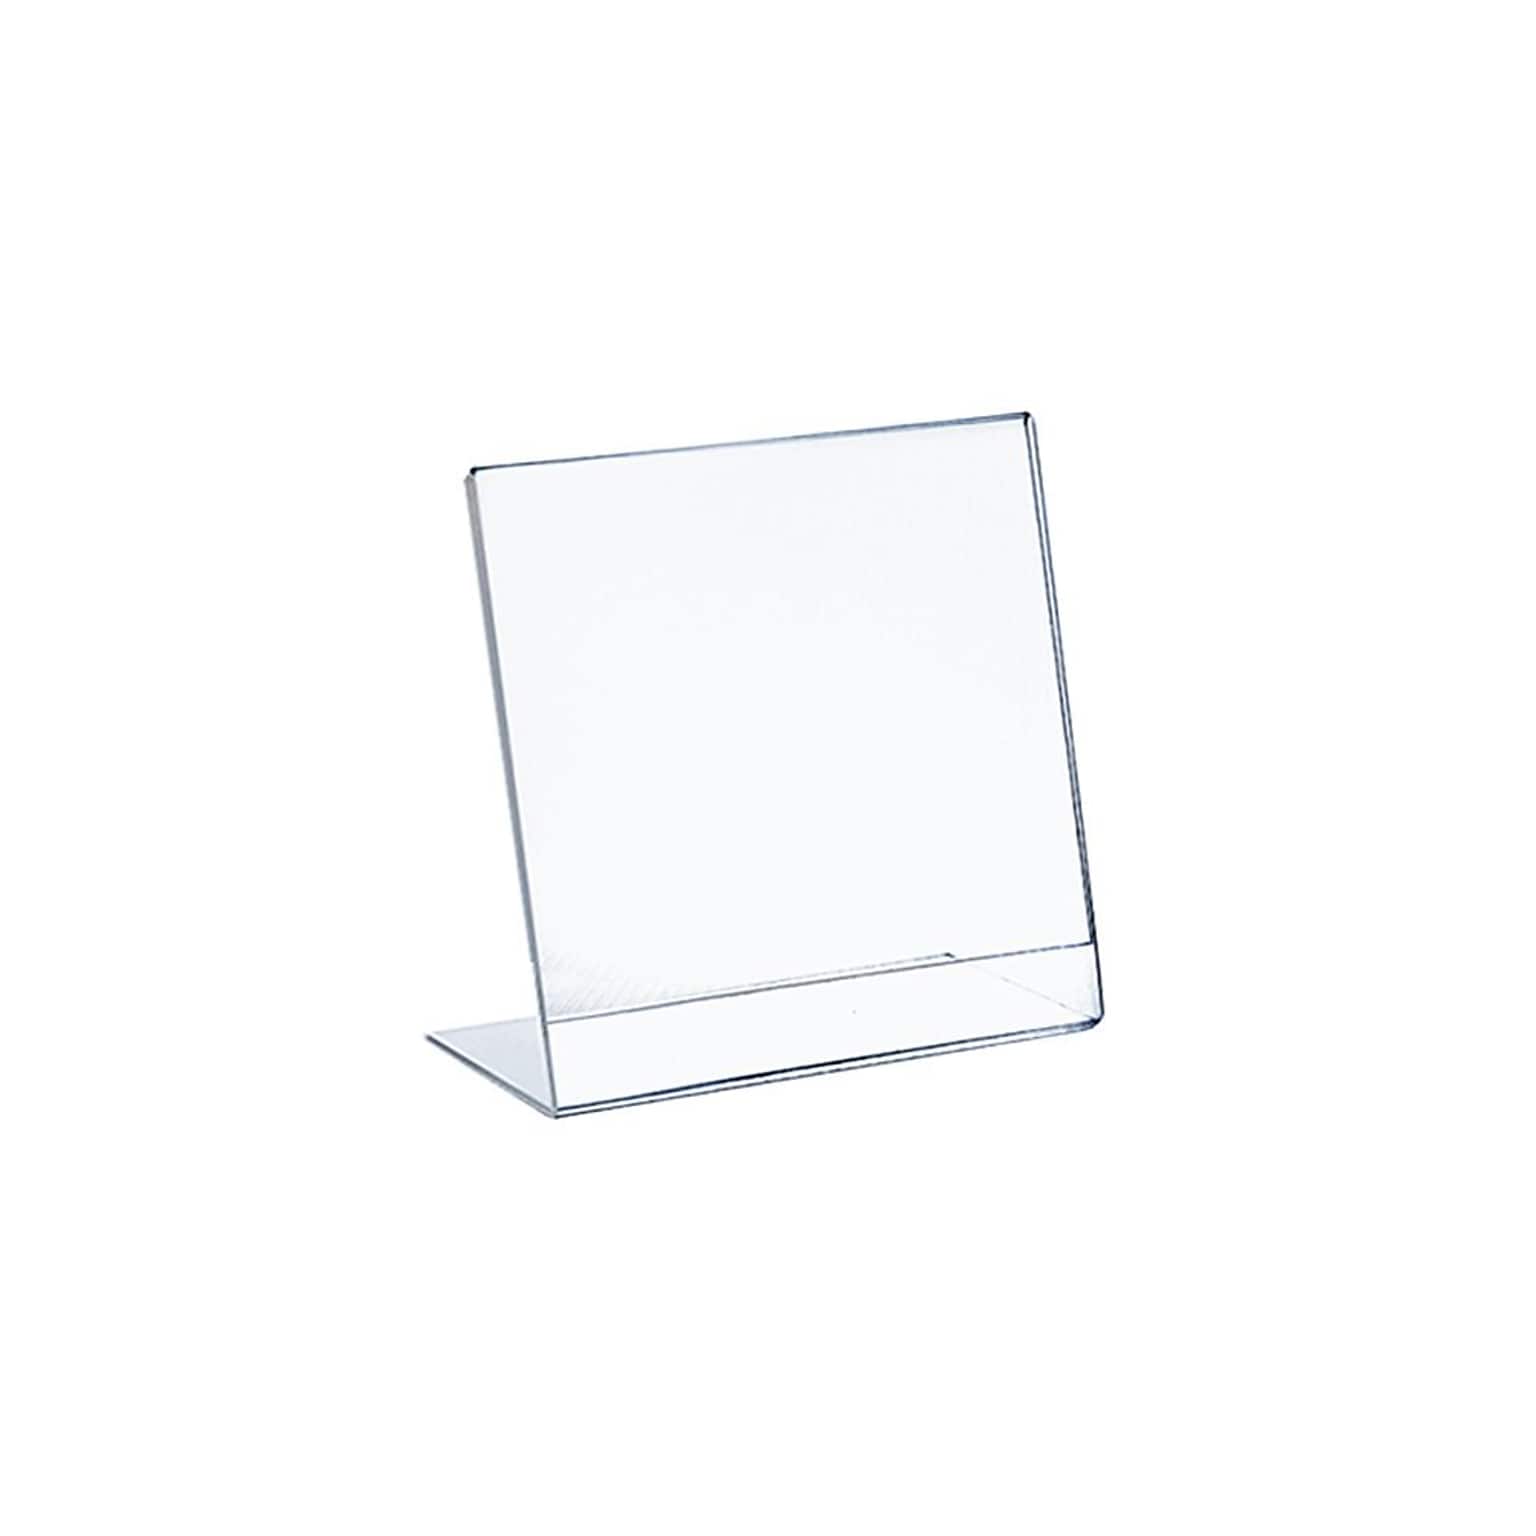 Azar Displays L-Shape Plastic Sign Holder 10/Pack